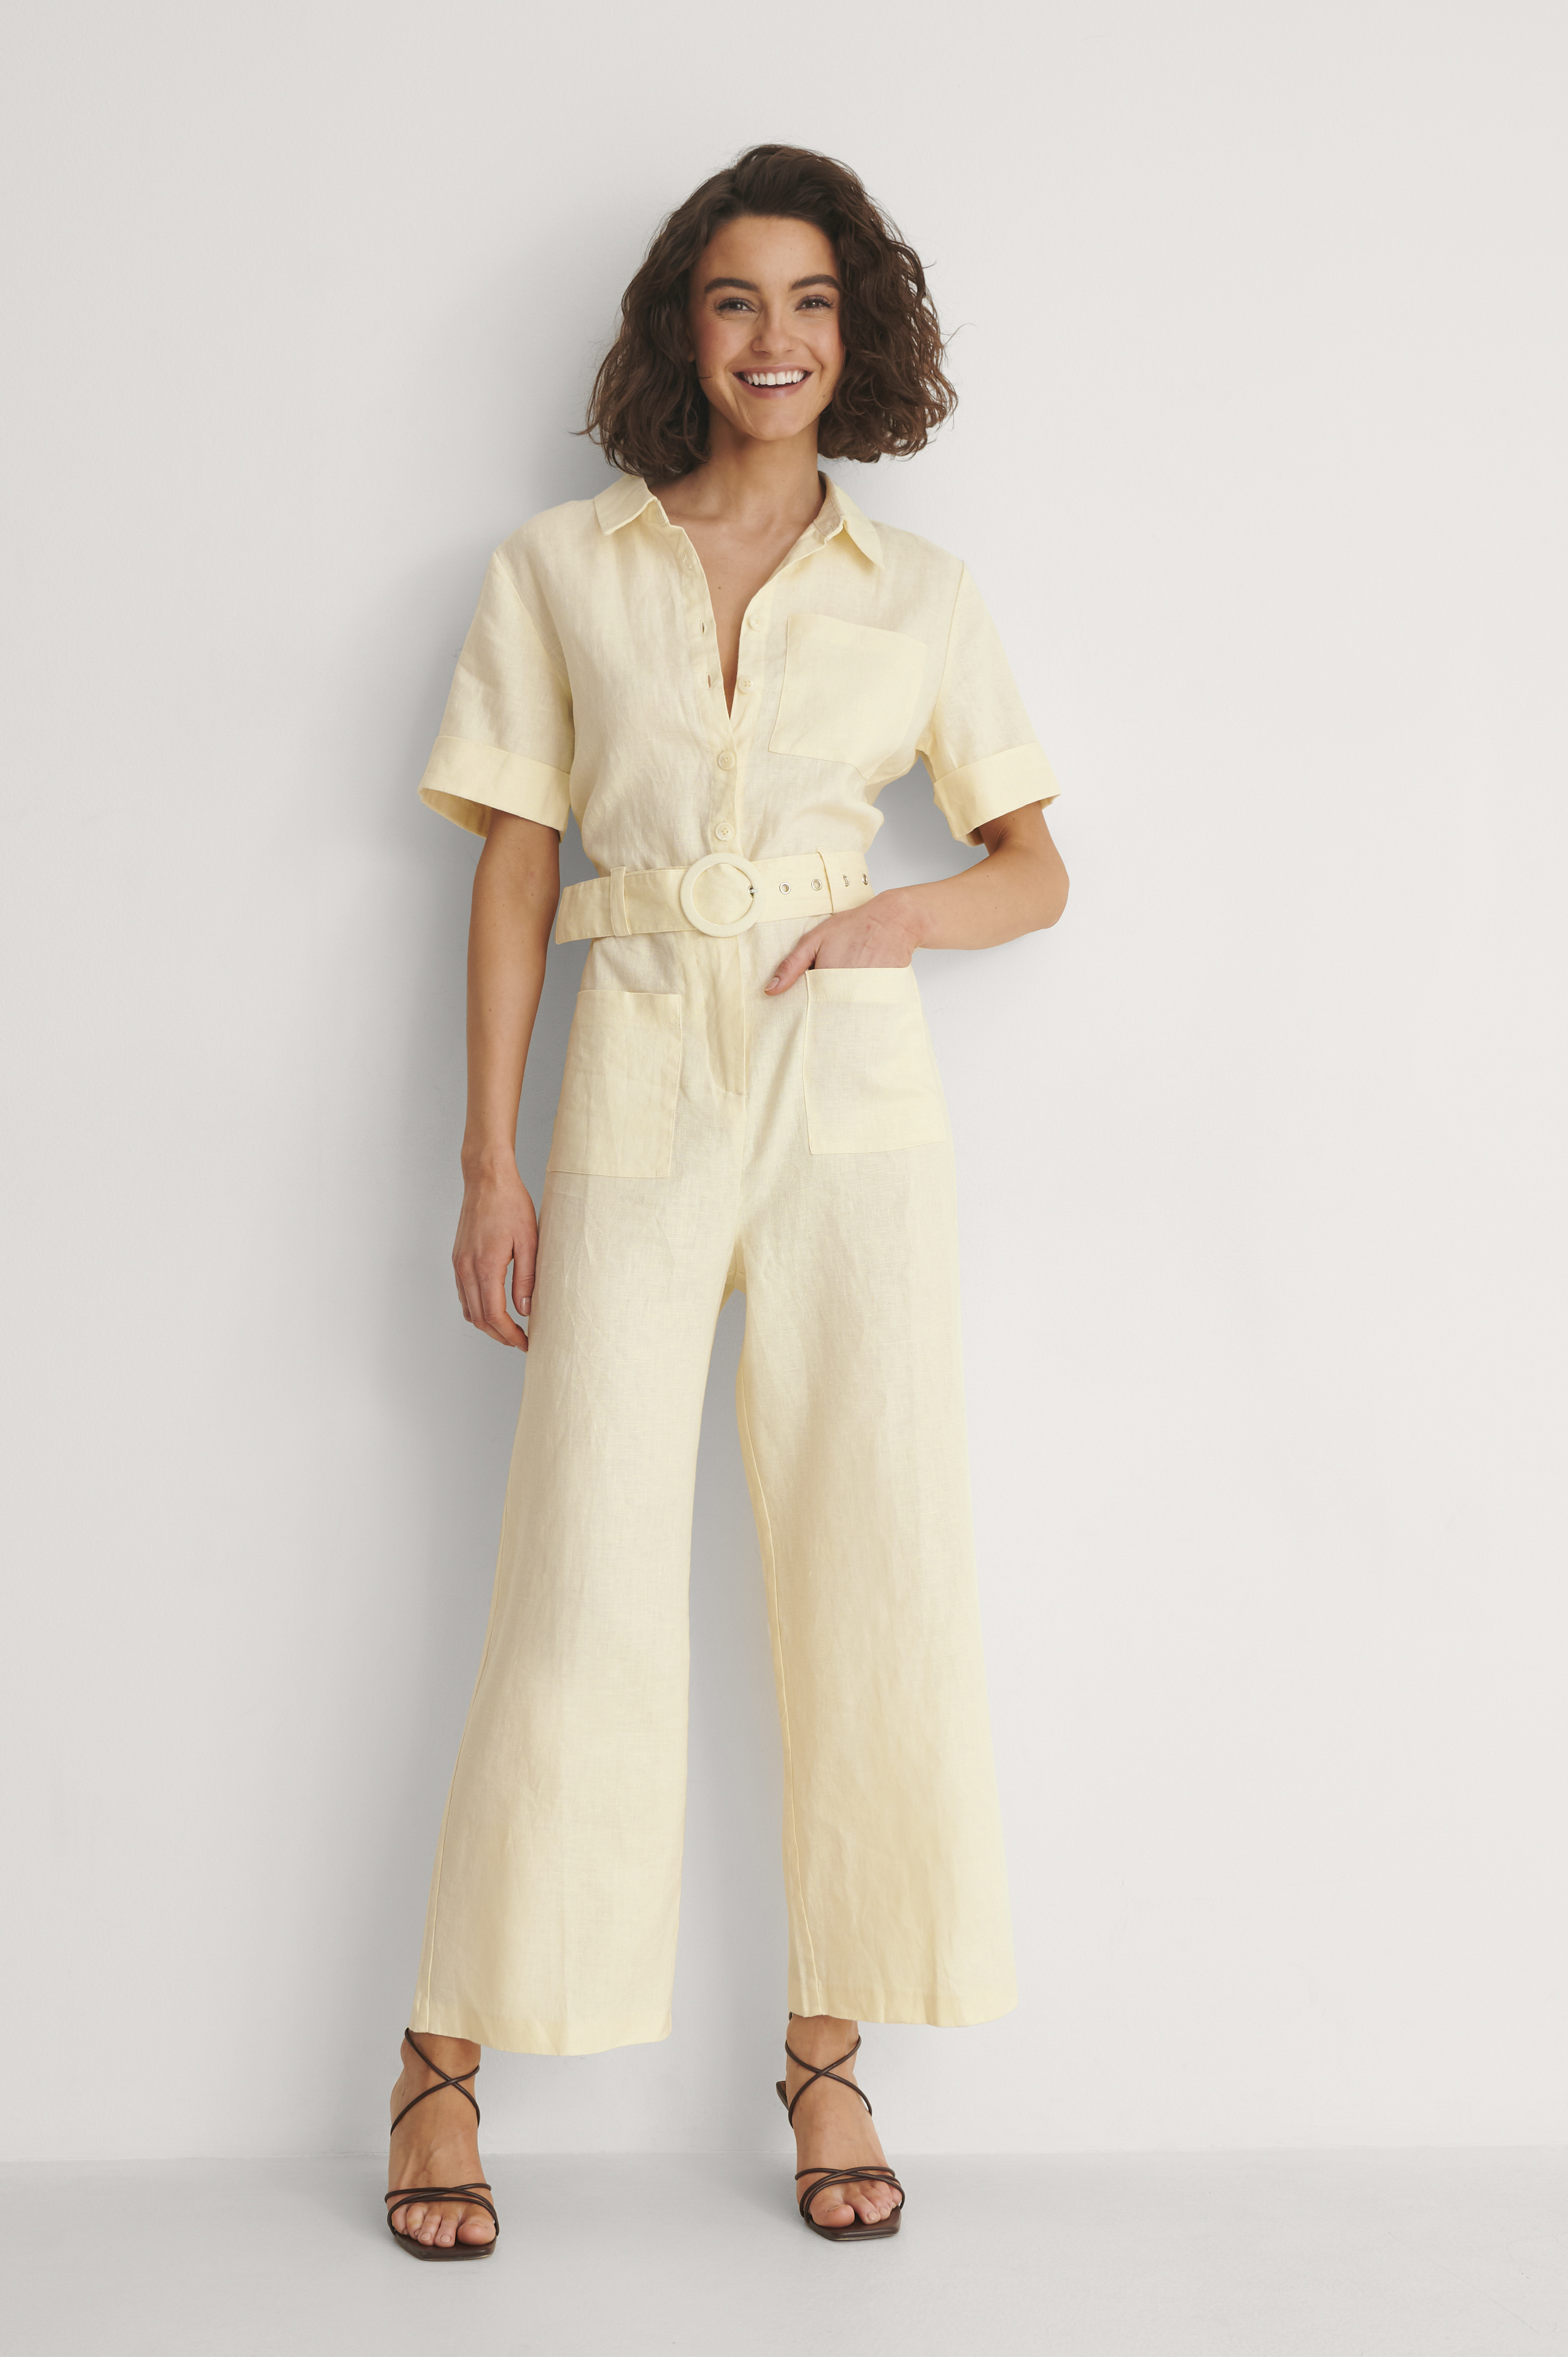 Short Sleeve Linen Jumpsuit Outfit.